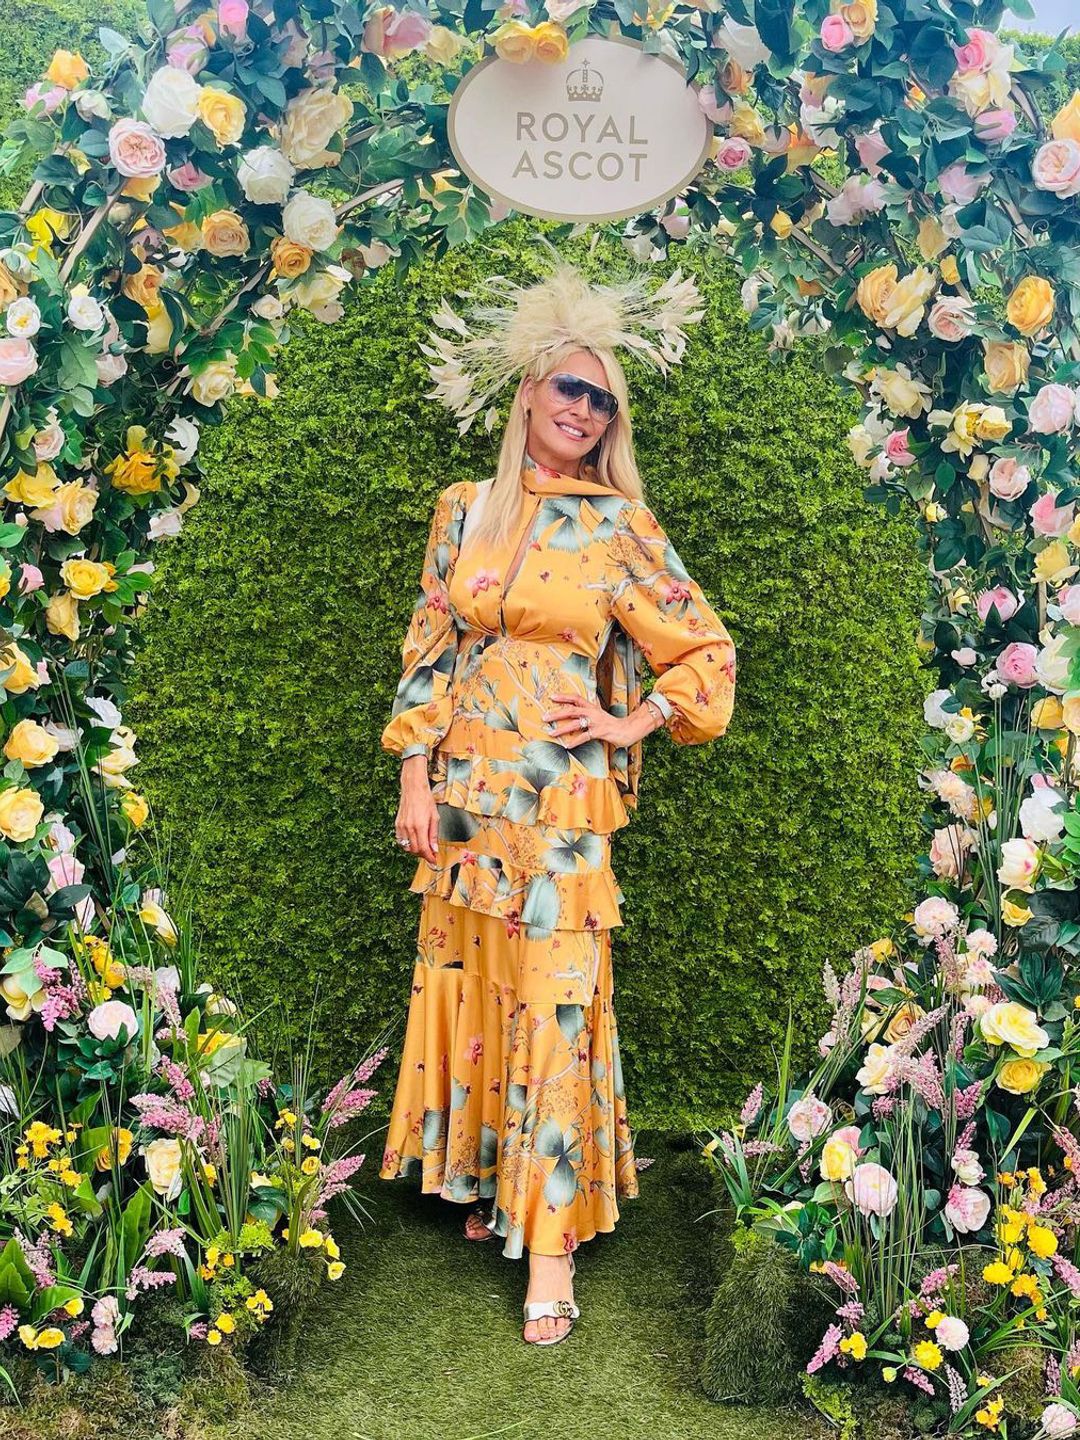 Tess Daly wearing a gold floral dress at Royal Ascot